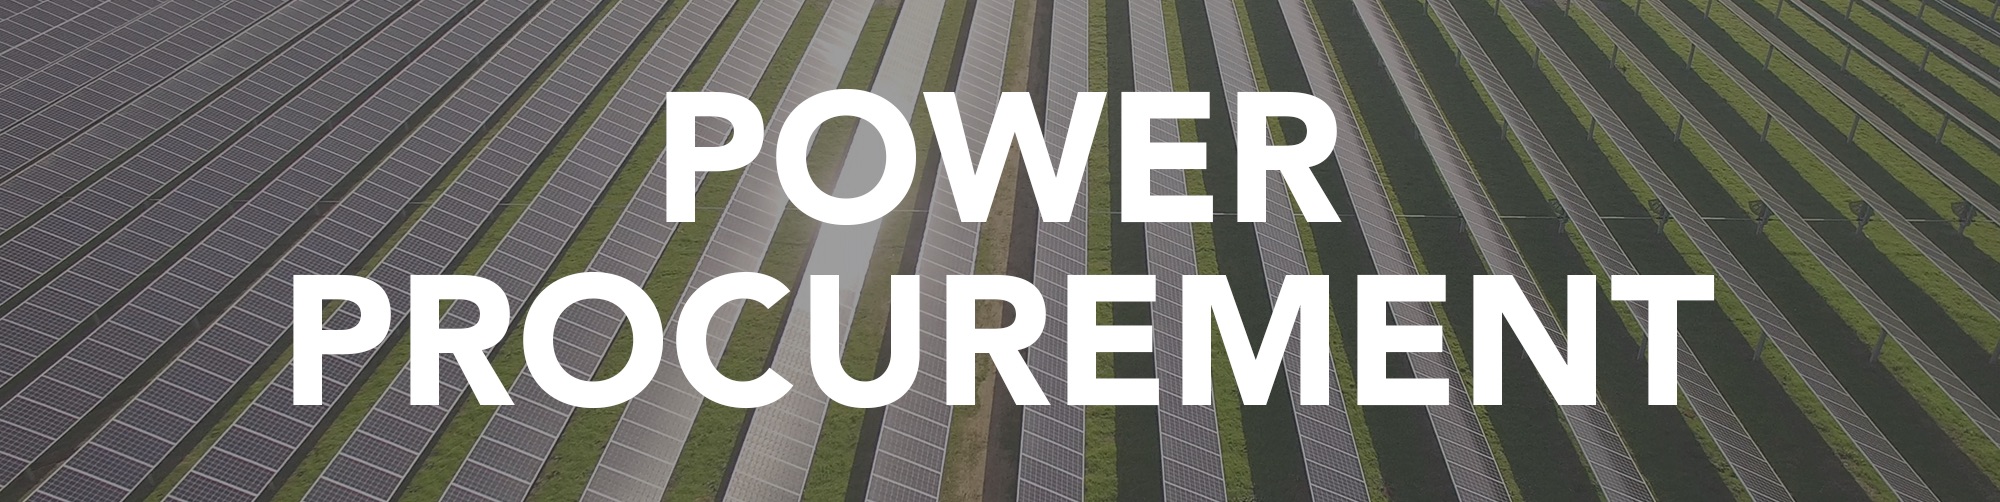 Power Procurement | MCE News & Articles